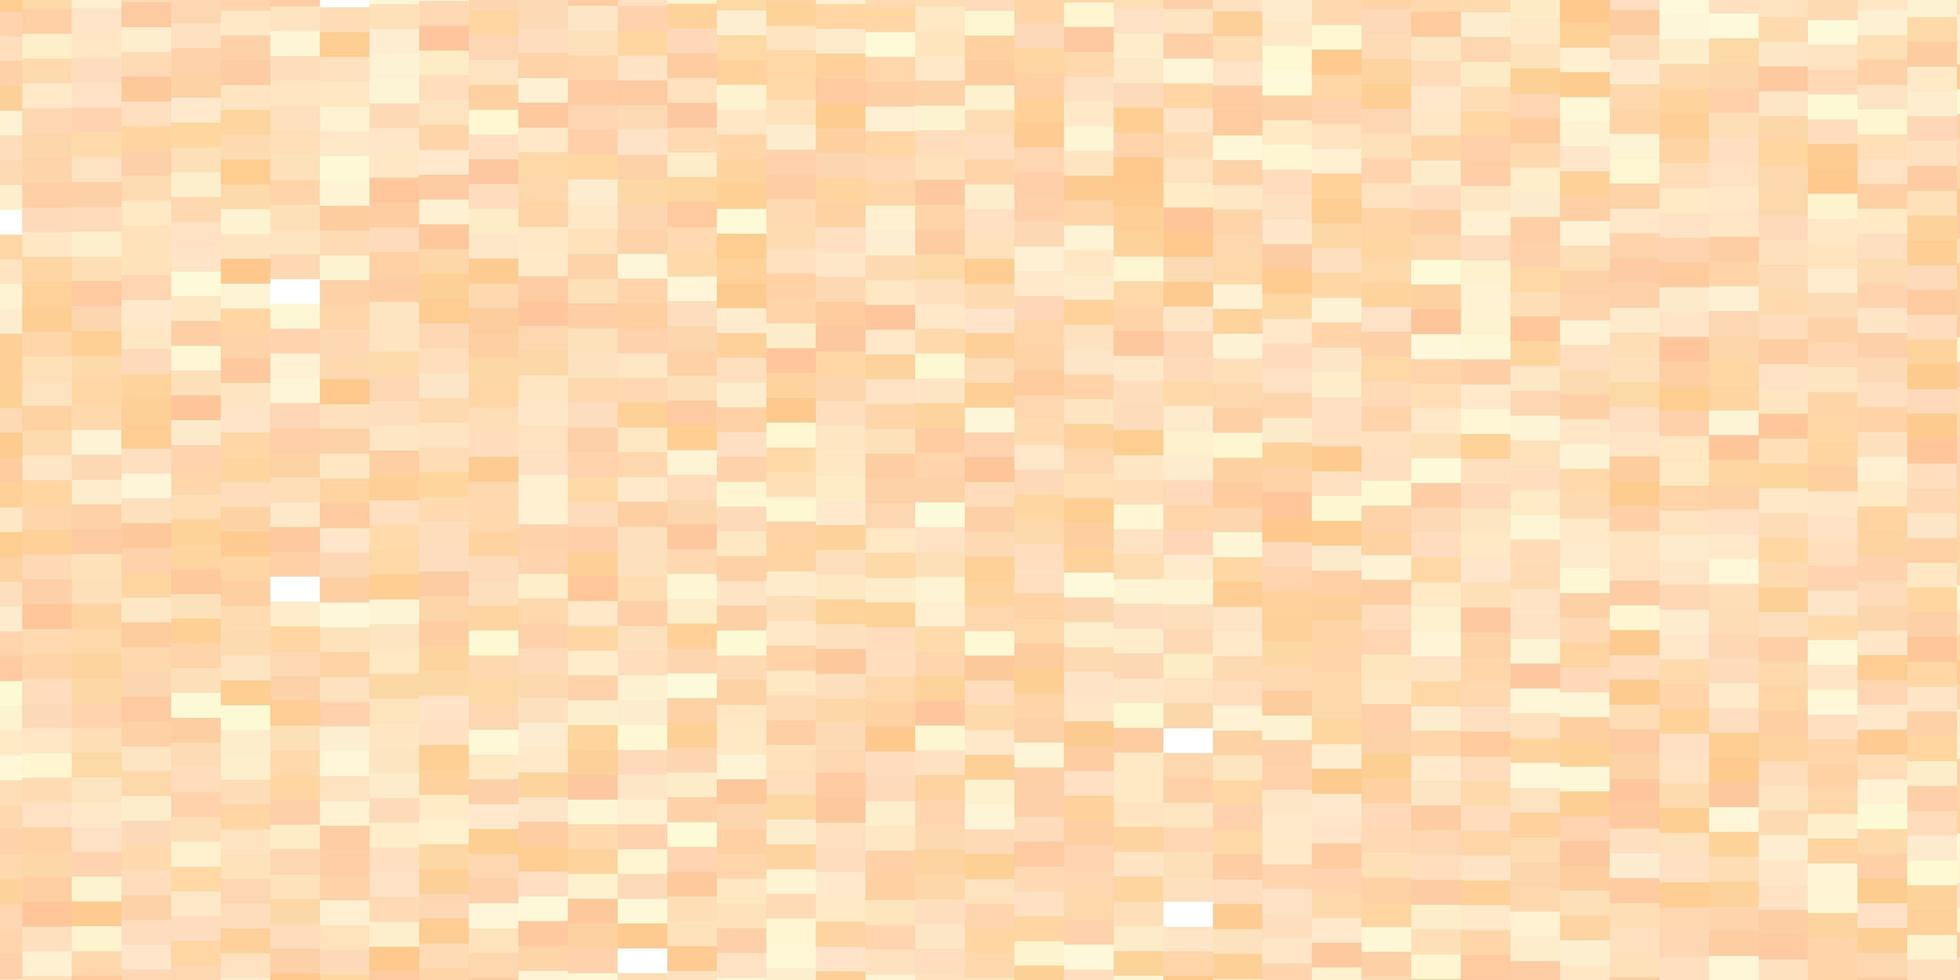 sfondo vettoriale arancione chiaro con rettangoli.